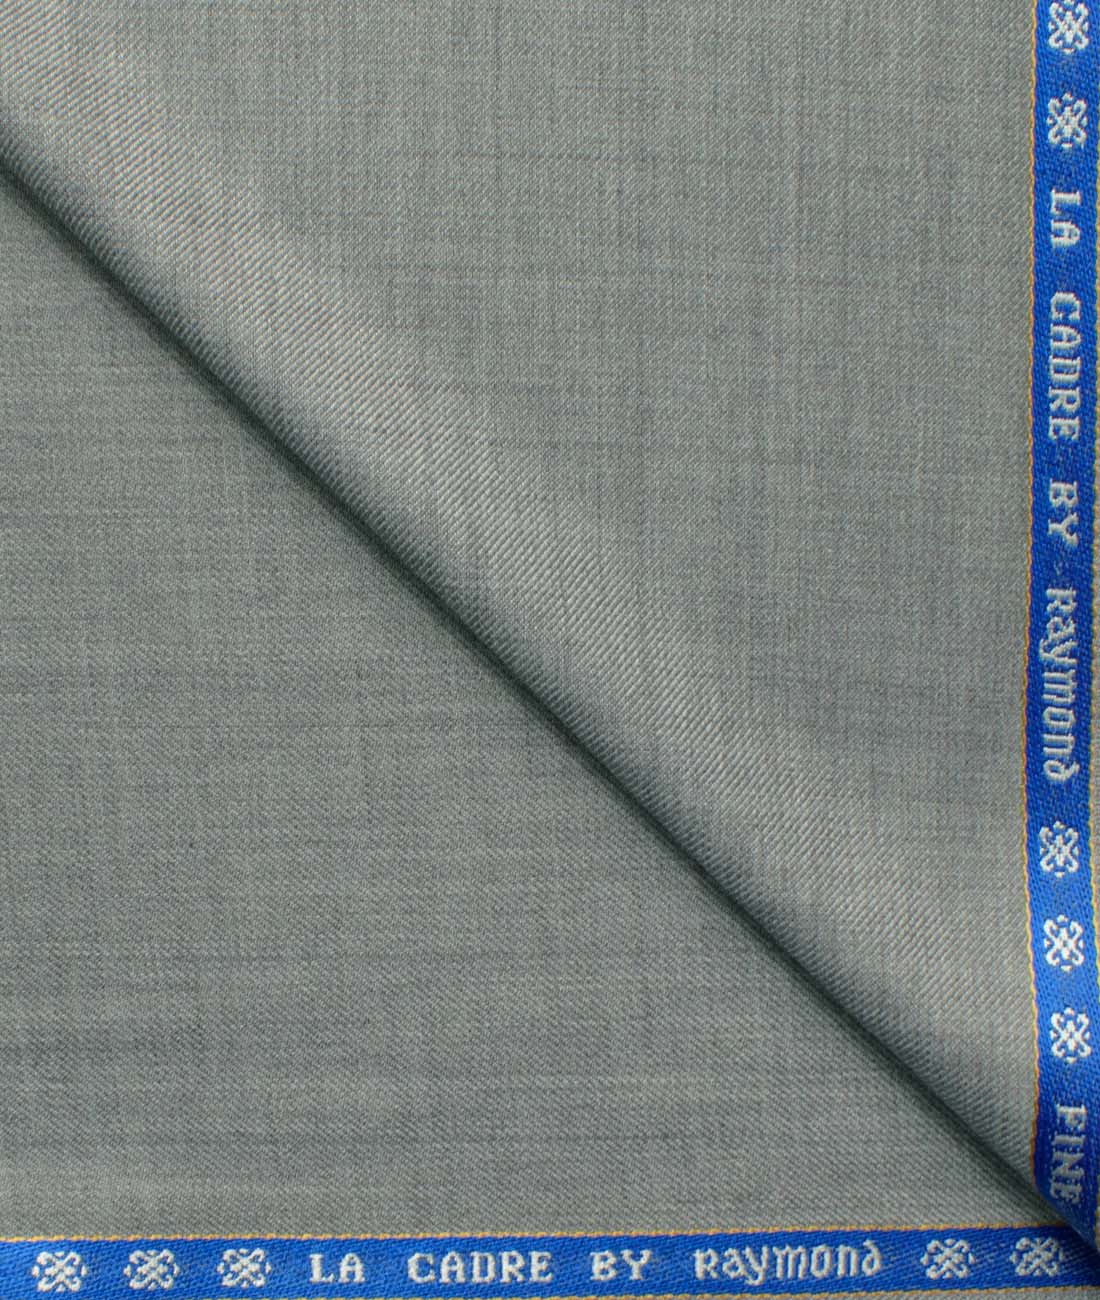 Raymond Pure Cotton Solid Shirt & Trouser Fabric Price in India - Buy  Raymond Pure Cotton Solid Shirt & Trouser Fabric online at Flipkart.com